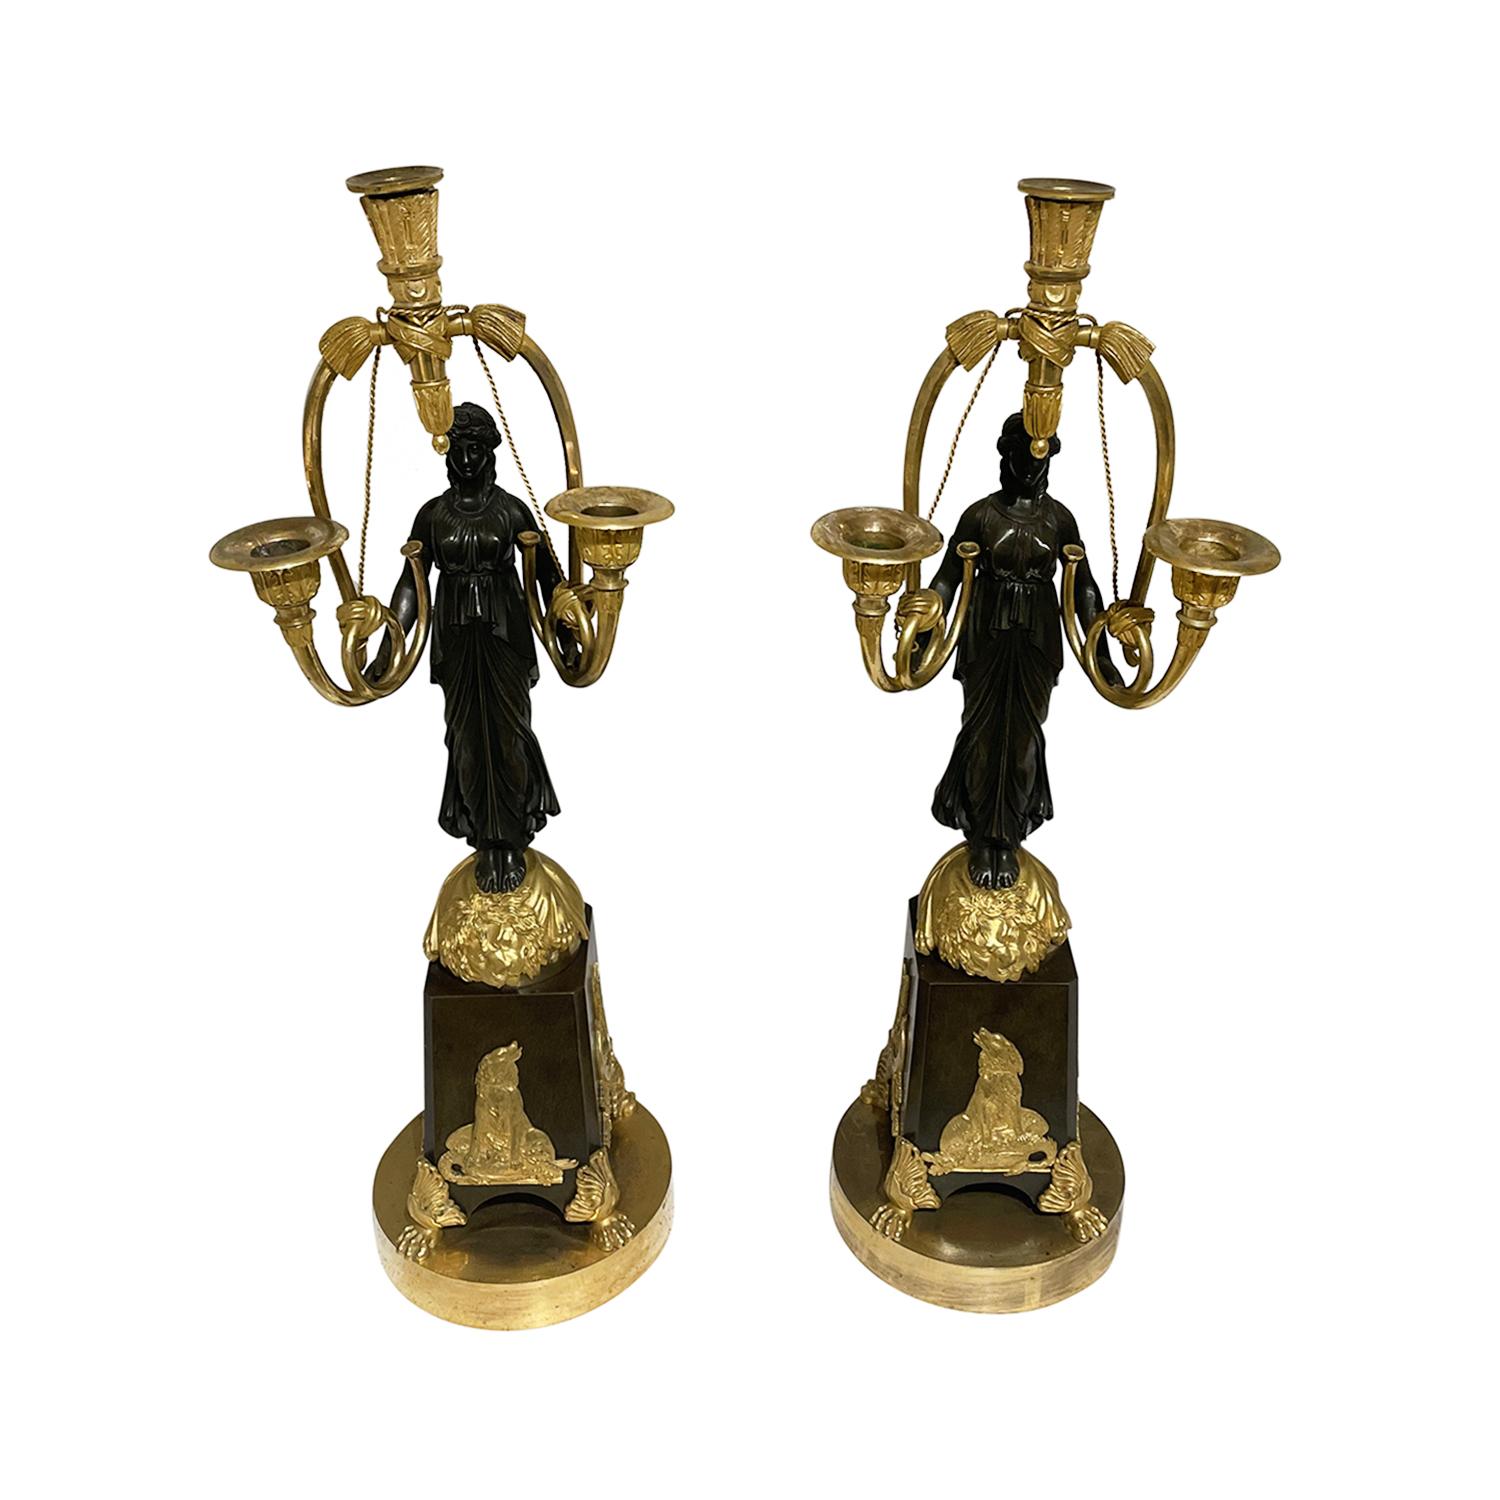 Ein gold-schwarzes, antikes französisches Paar Girandolen aus handgefertigter, vergoldeter Bronze, Friedrich Bergenfeldt zugeschrieben, in gutem Zustand. Jeder der detaillierten Pariser Kerzenständer ist mit einer Kriegerin komponiert, die mit